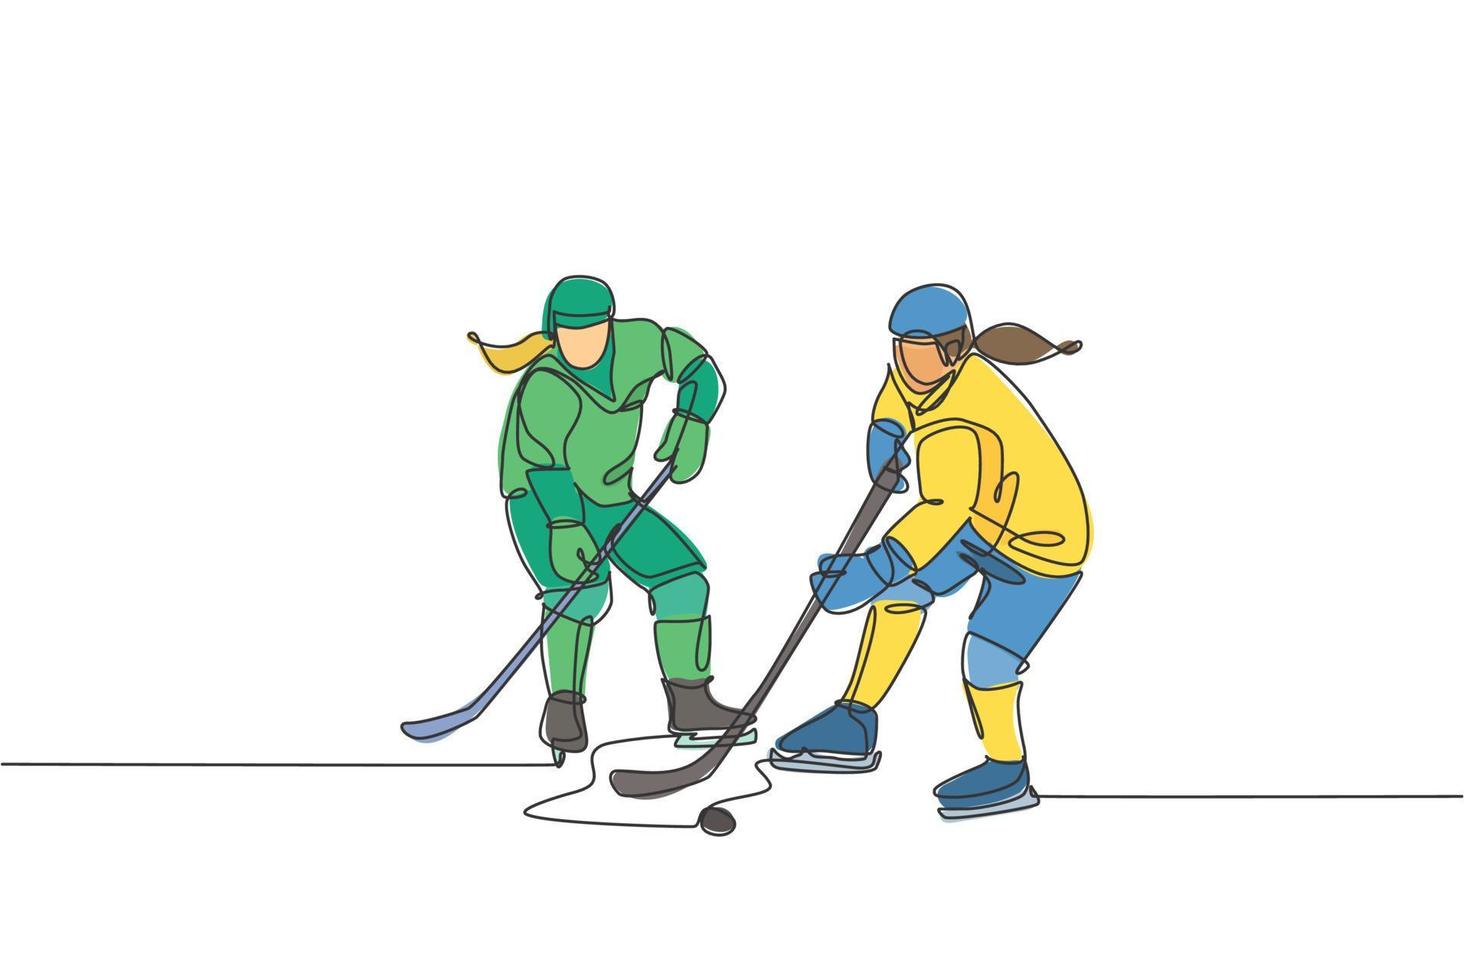 un dibujo de una sola línea de dos jóvenes jugadores de hockey sobre hielo en acción para ganar el disco en un juego competitivo en la ilustración vectorial del estadio de la pista de hielo. concepto de torneo deportivo. diseño de dibujo de línea continua vector